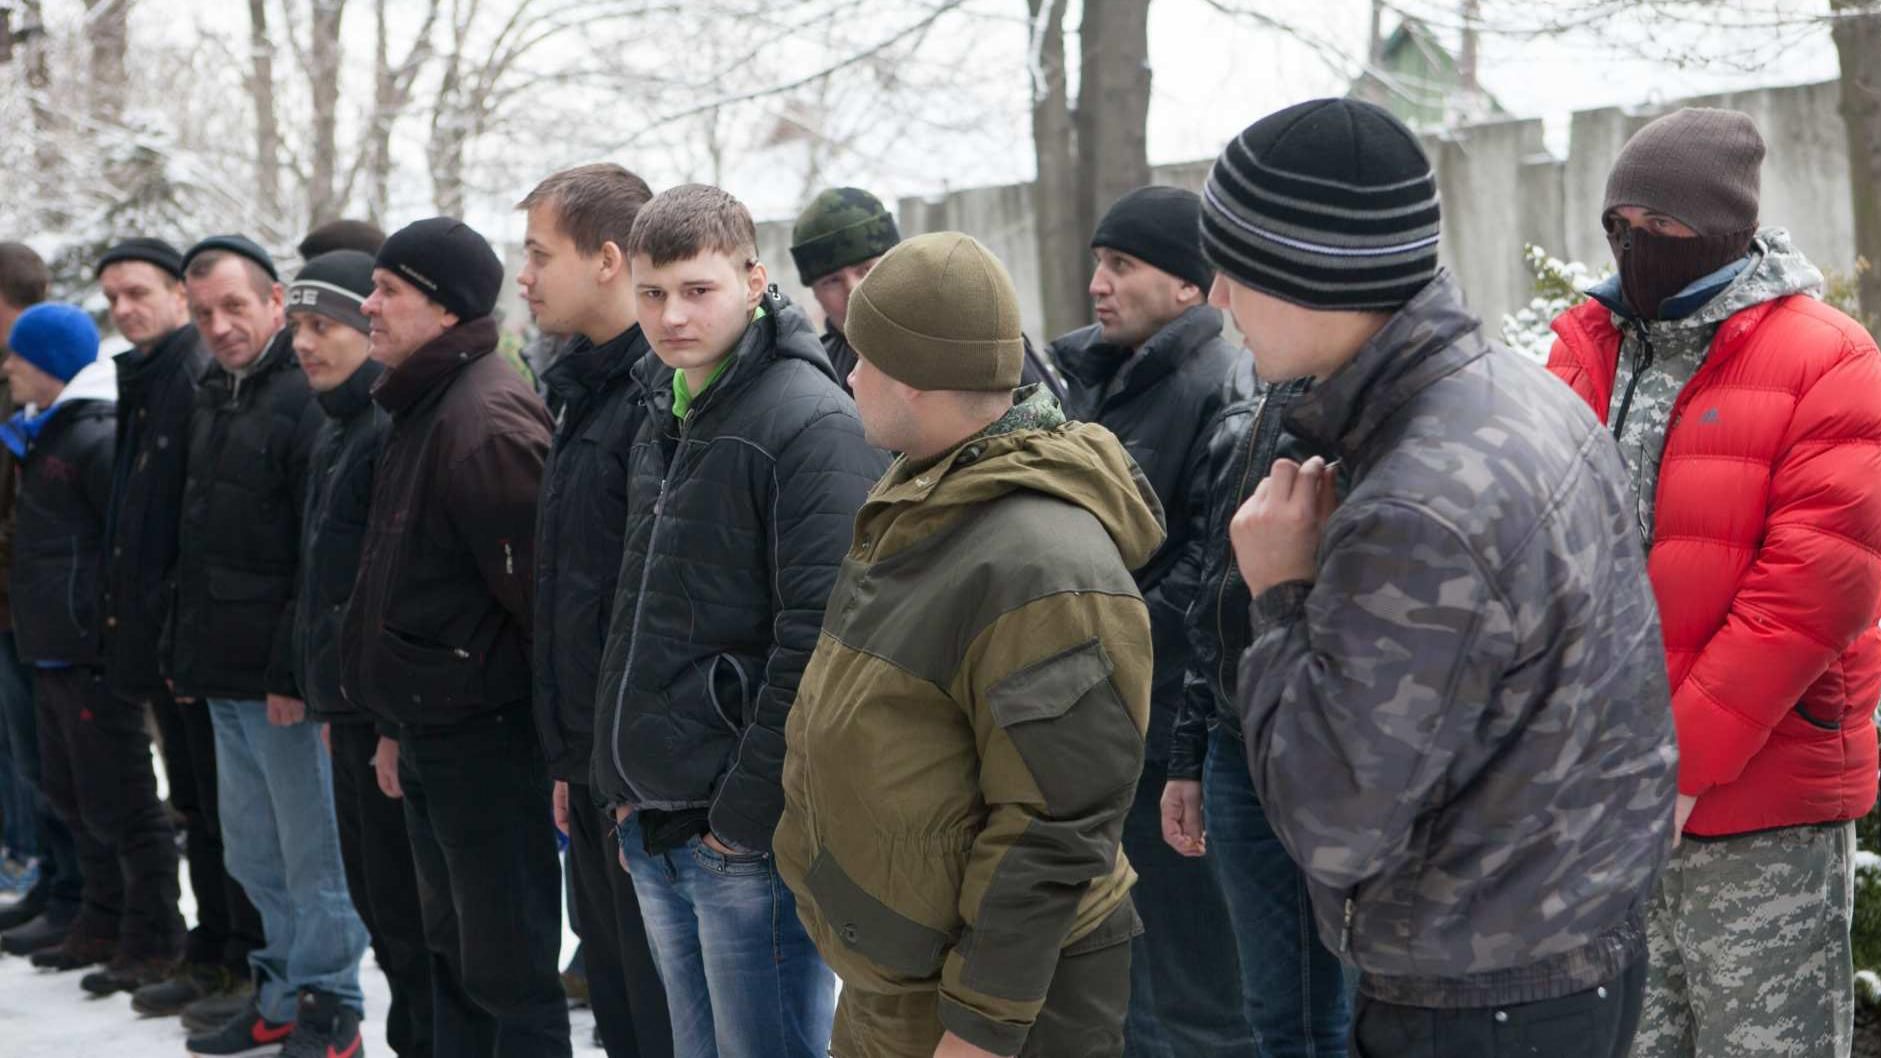 Высадили нас в поле как стадо, ни горячей еды, ни туалета, – студент о "мобилизации" в "ДНР"